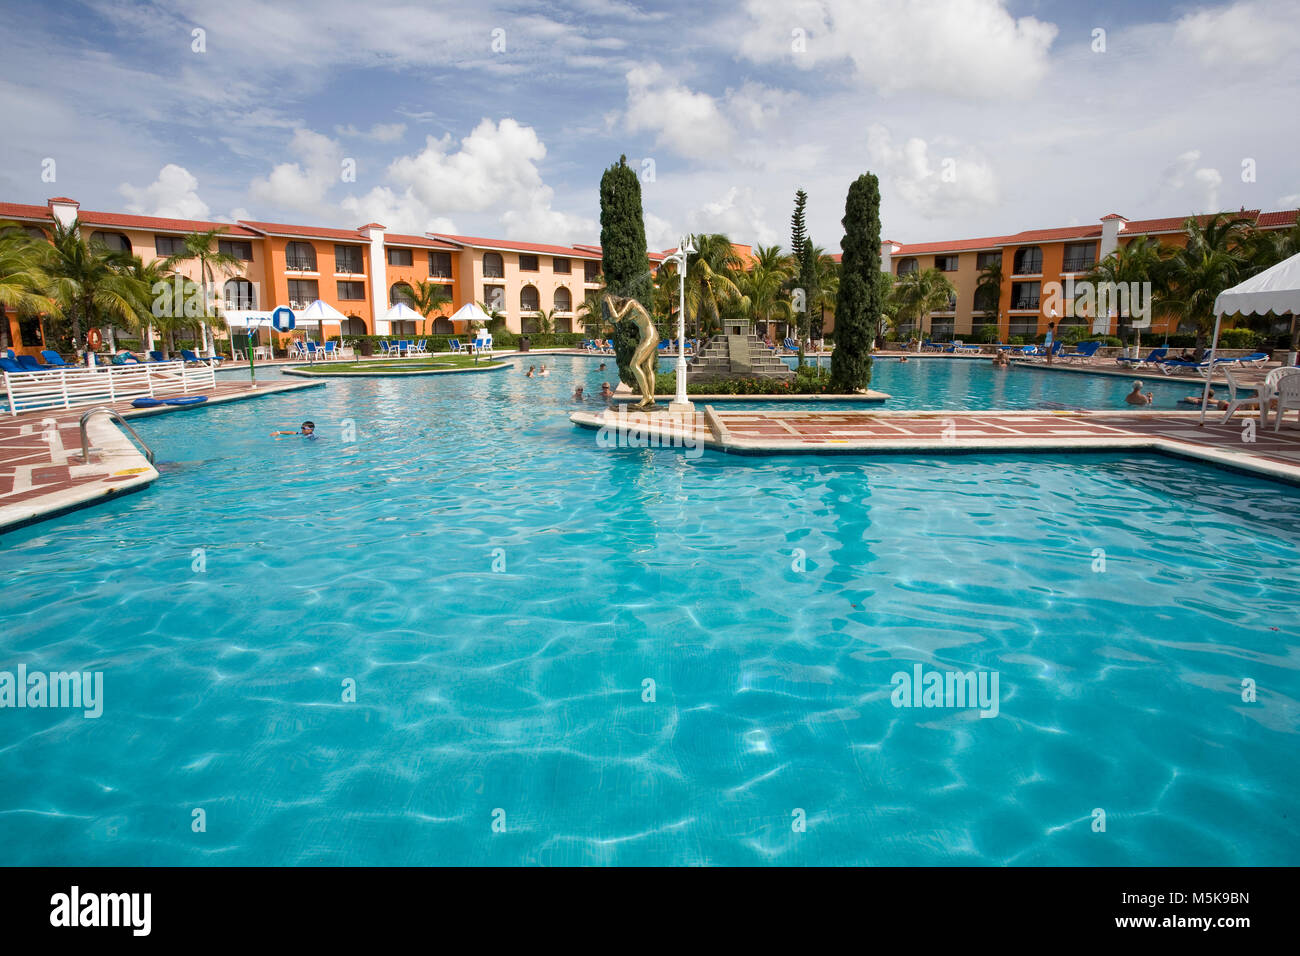 Pool-Landschaft im Hotel Cozumel, Cozumel, Mexiko, Karibik | Piscina en el Hotel Cozumel, Cozumel, México, el Caribe Foto de stock